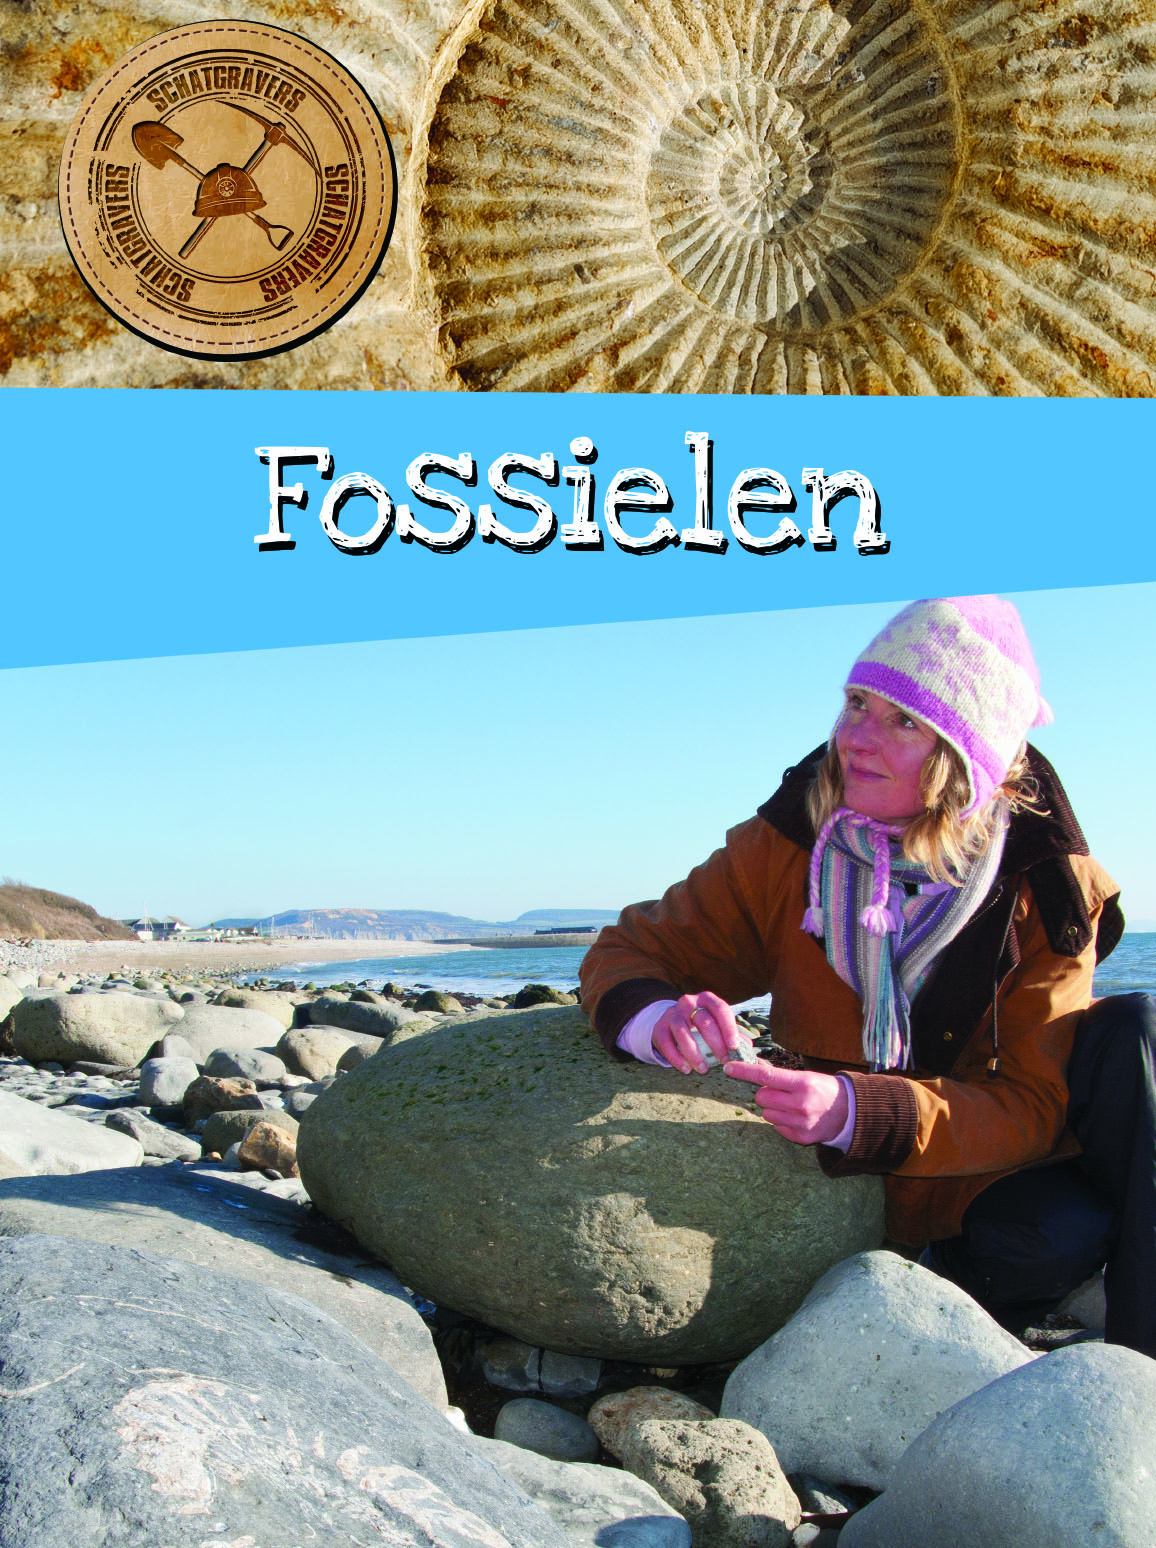 CNBSGR004 Fossielen